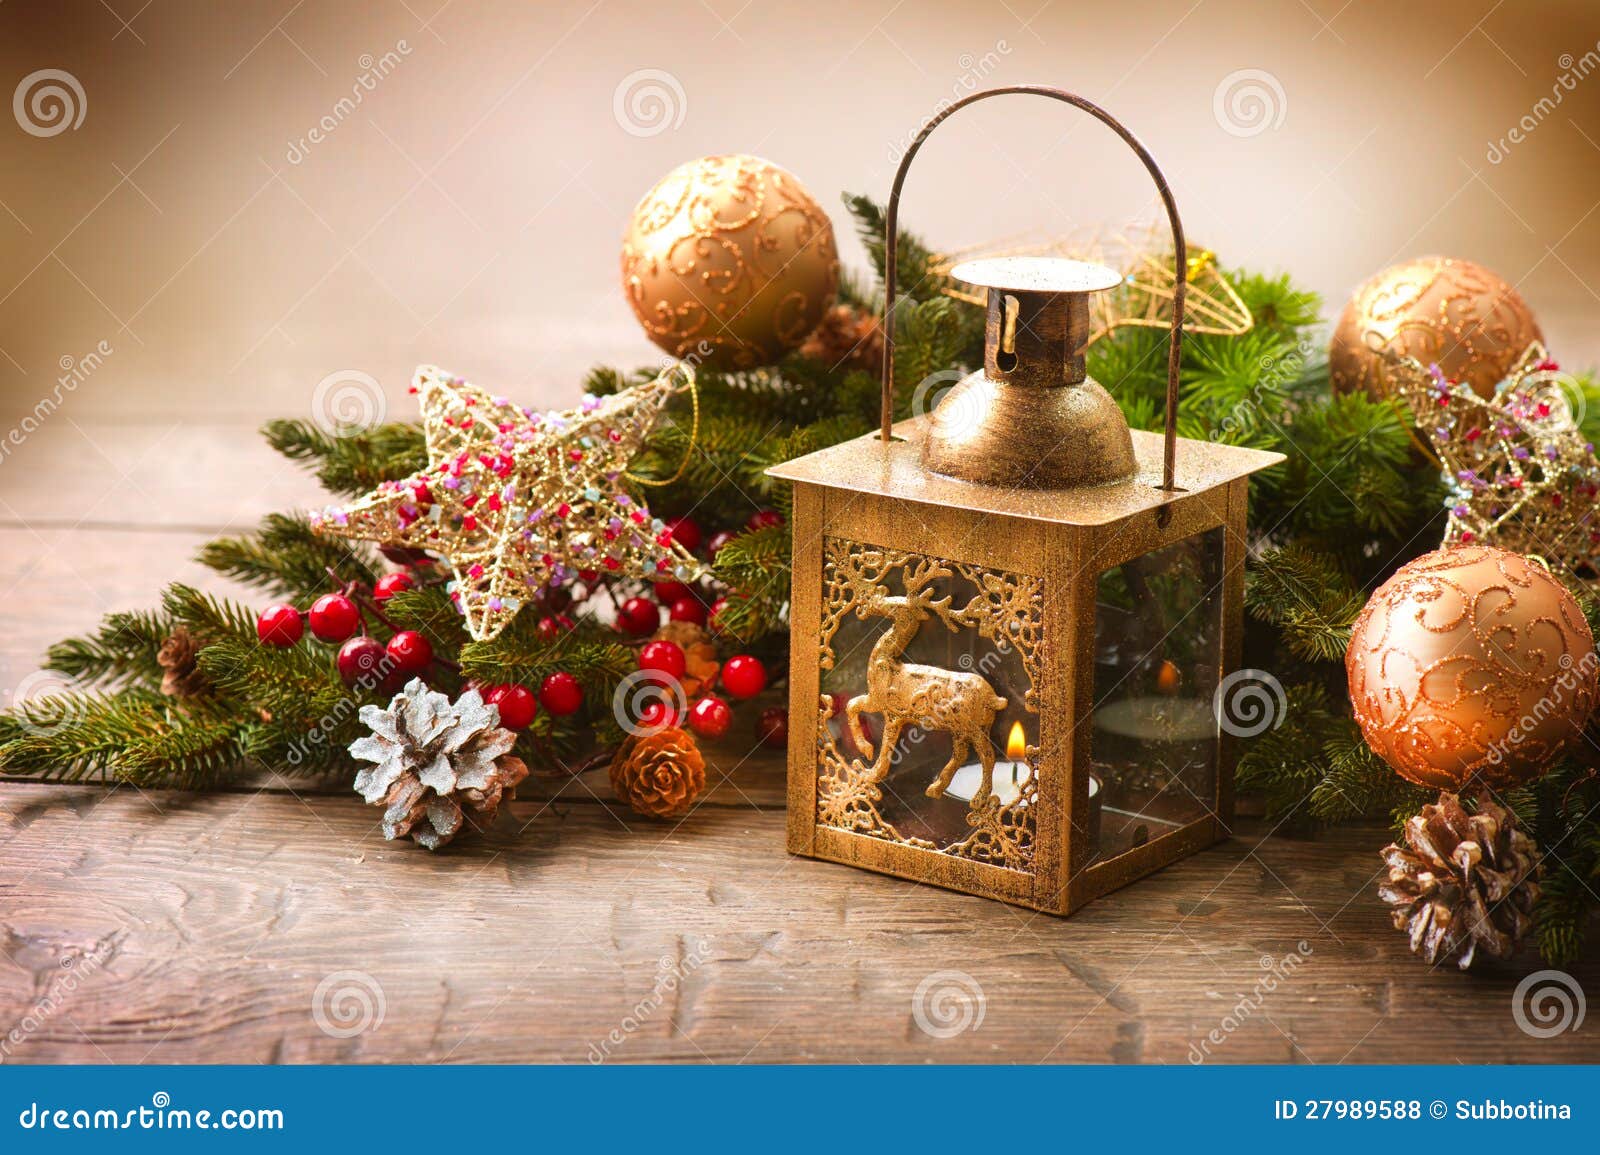 Christmas Scene stock photo. Image of decor, background - 27989588